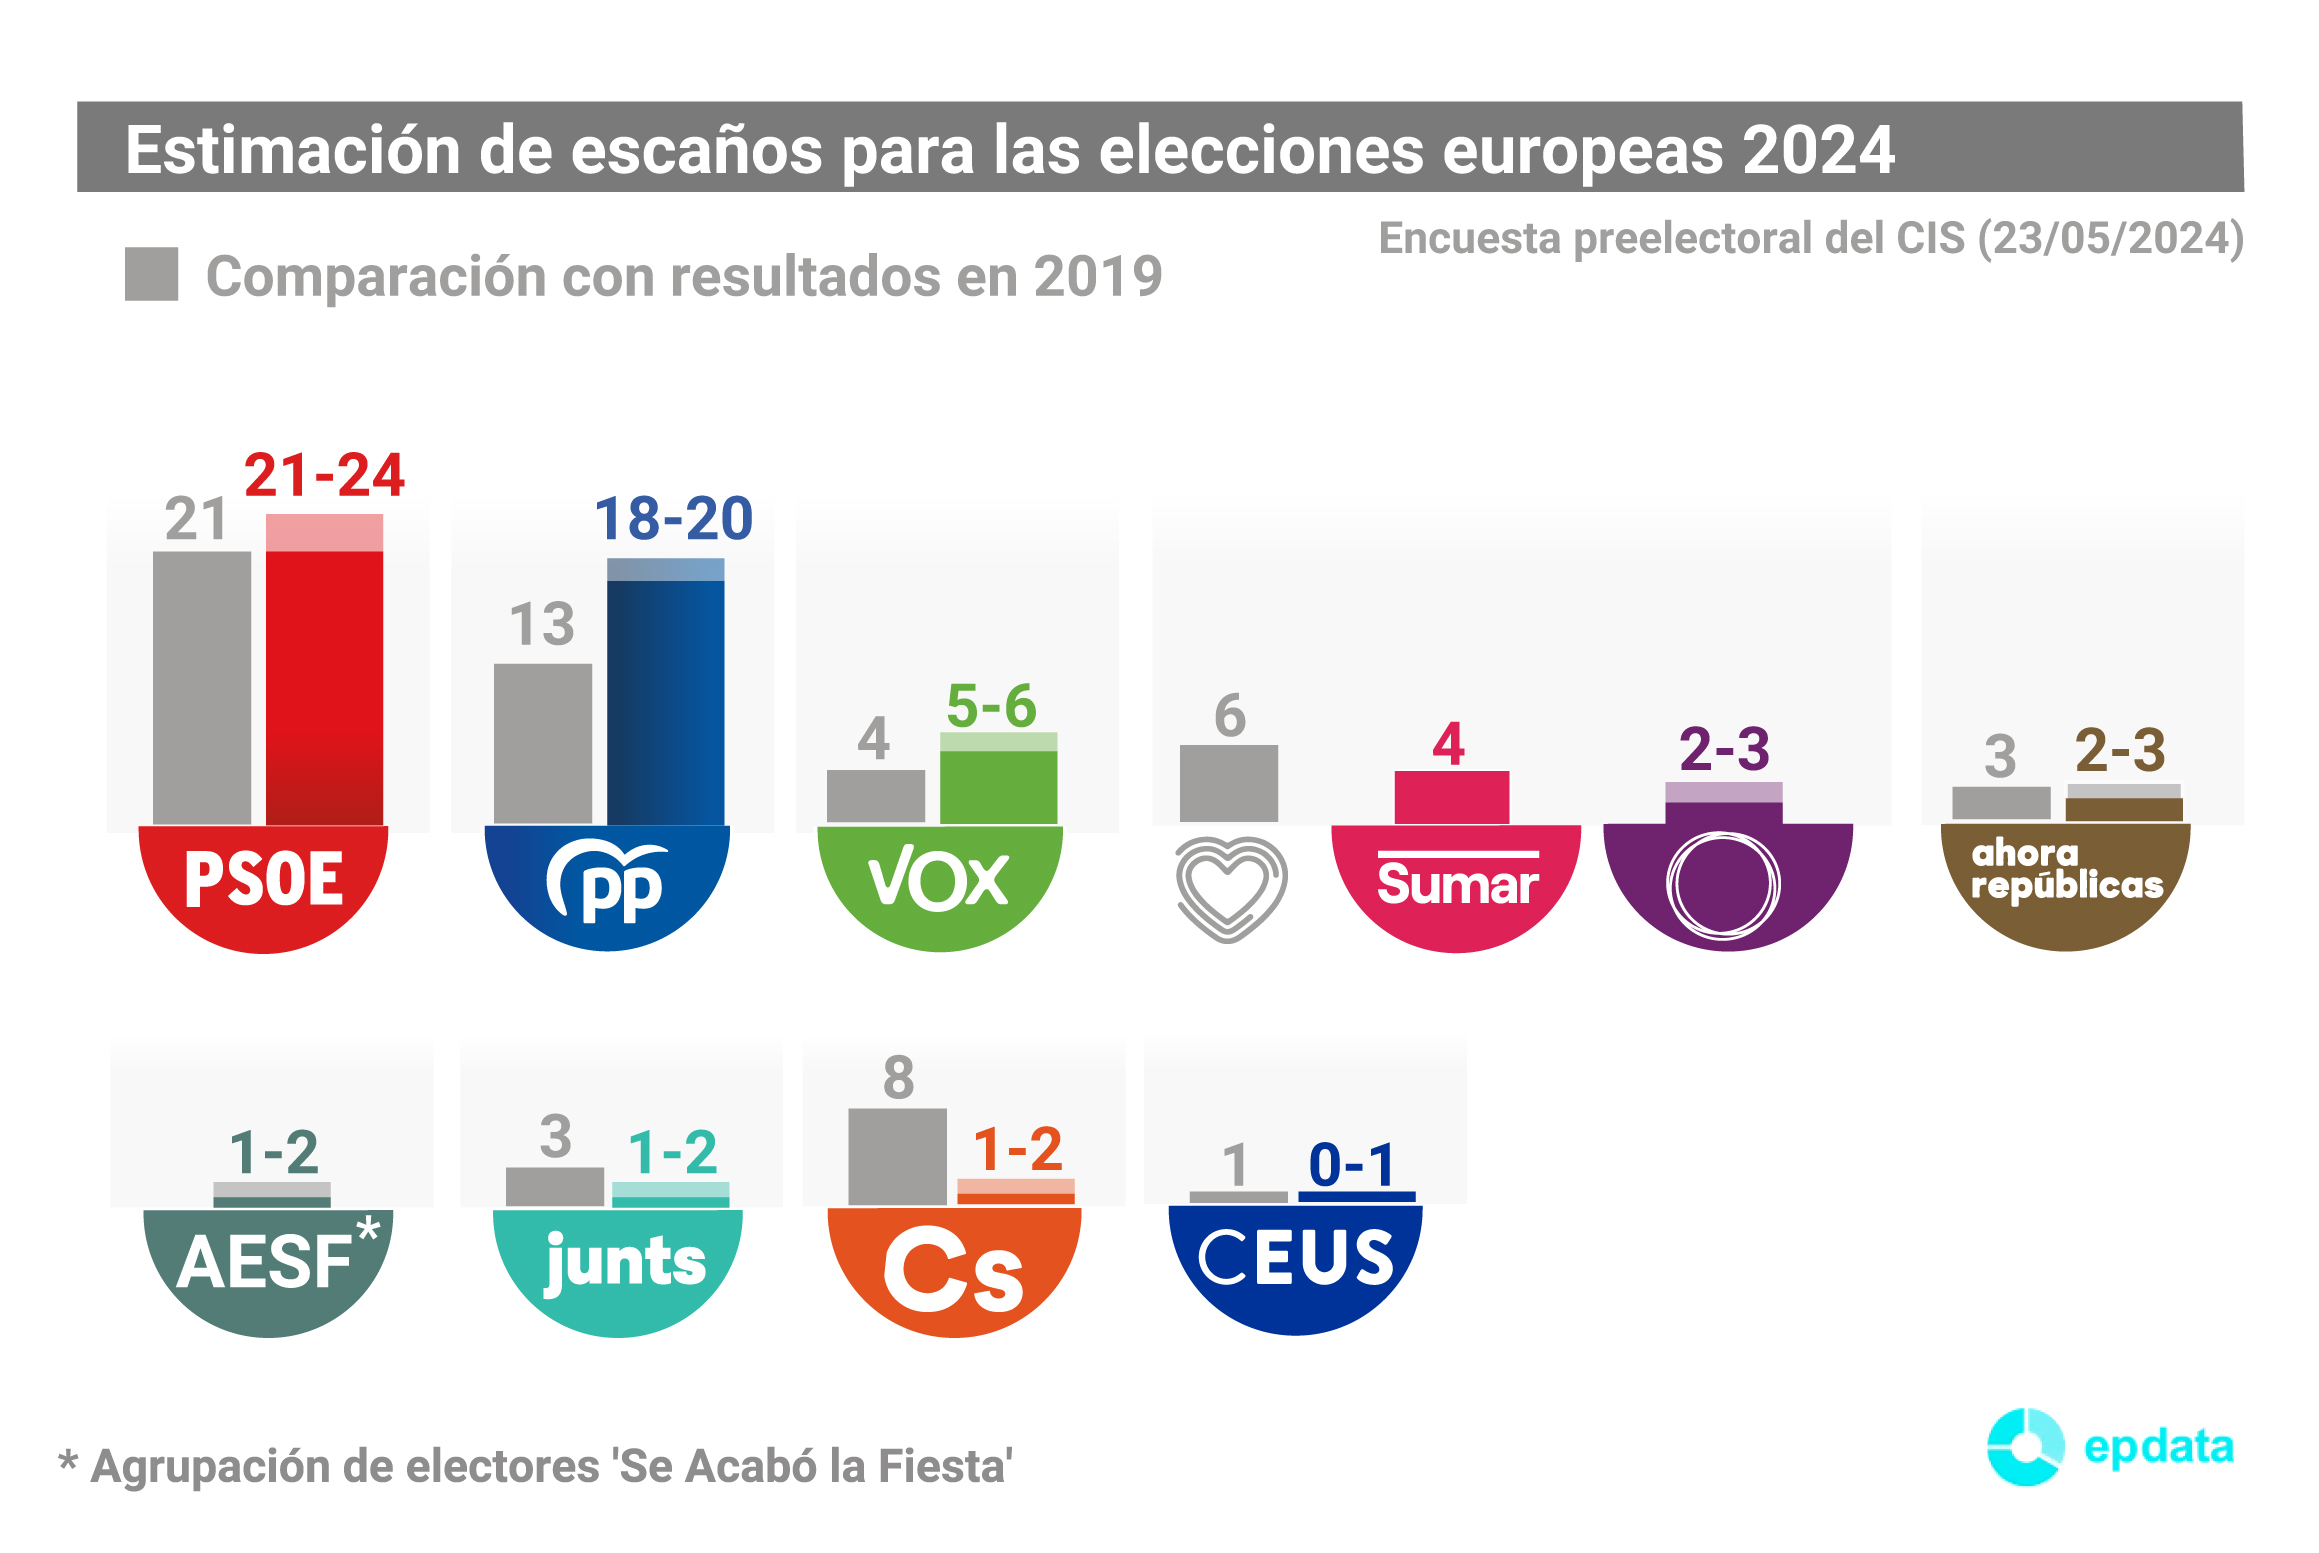 Encuesta preelectoral del CIS para las elecciones europeas